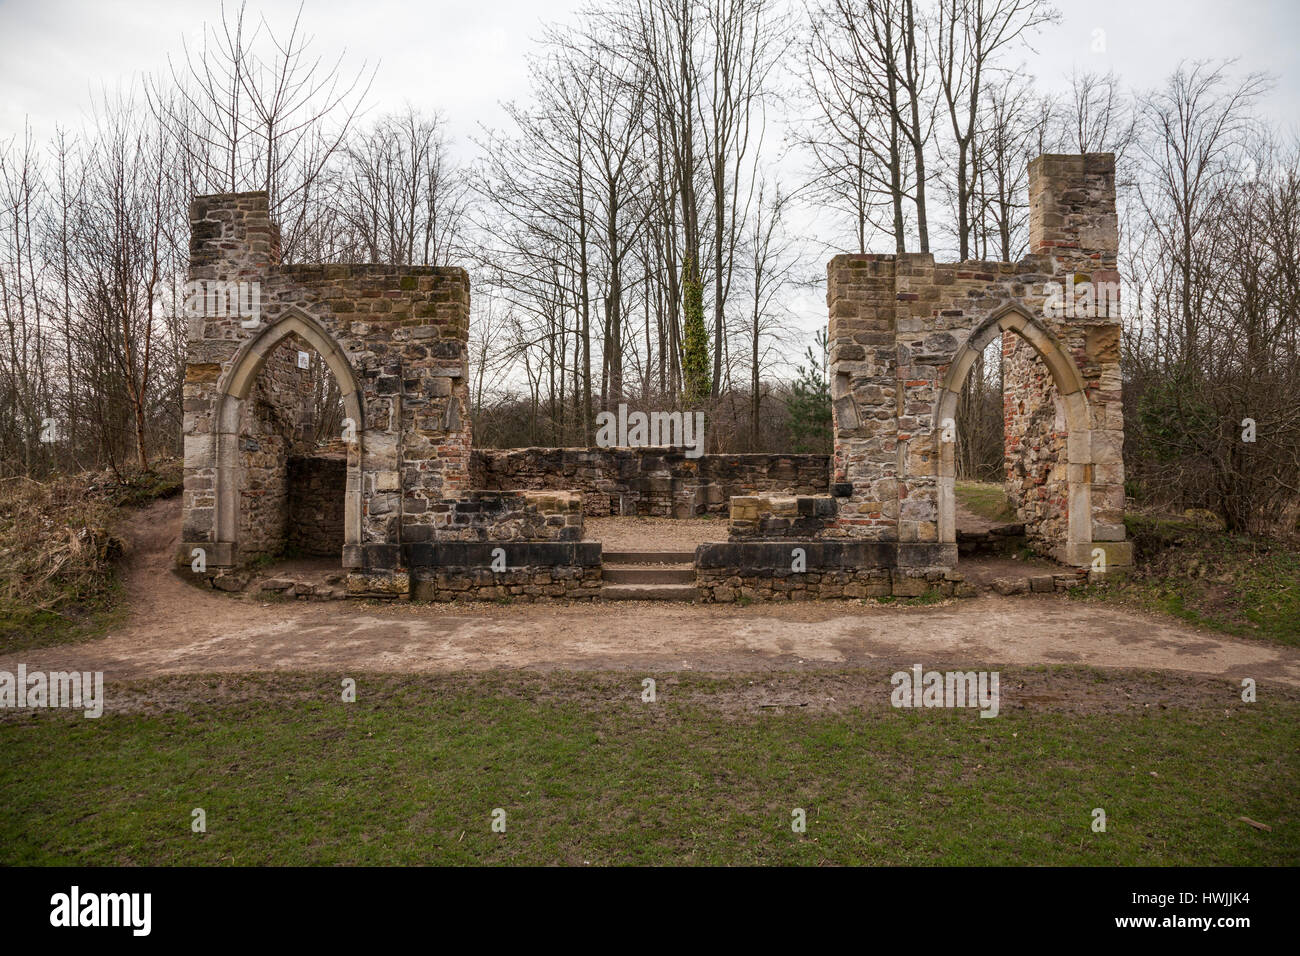 Le style gothique Bobo ruine à Retiro Hardwick Park,Sedgefield Durham,Angleterre,fr Banque D'Images